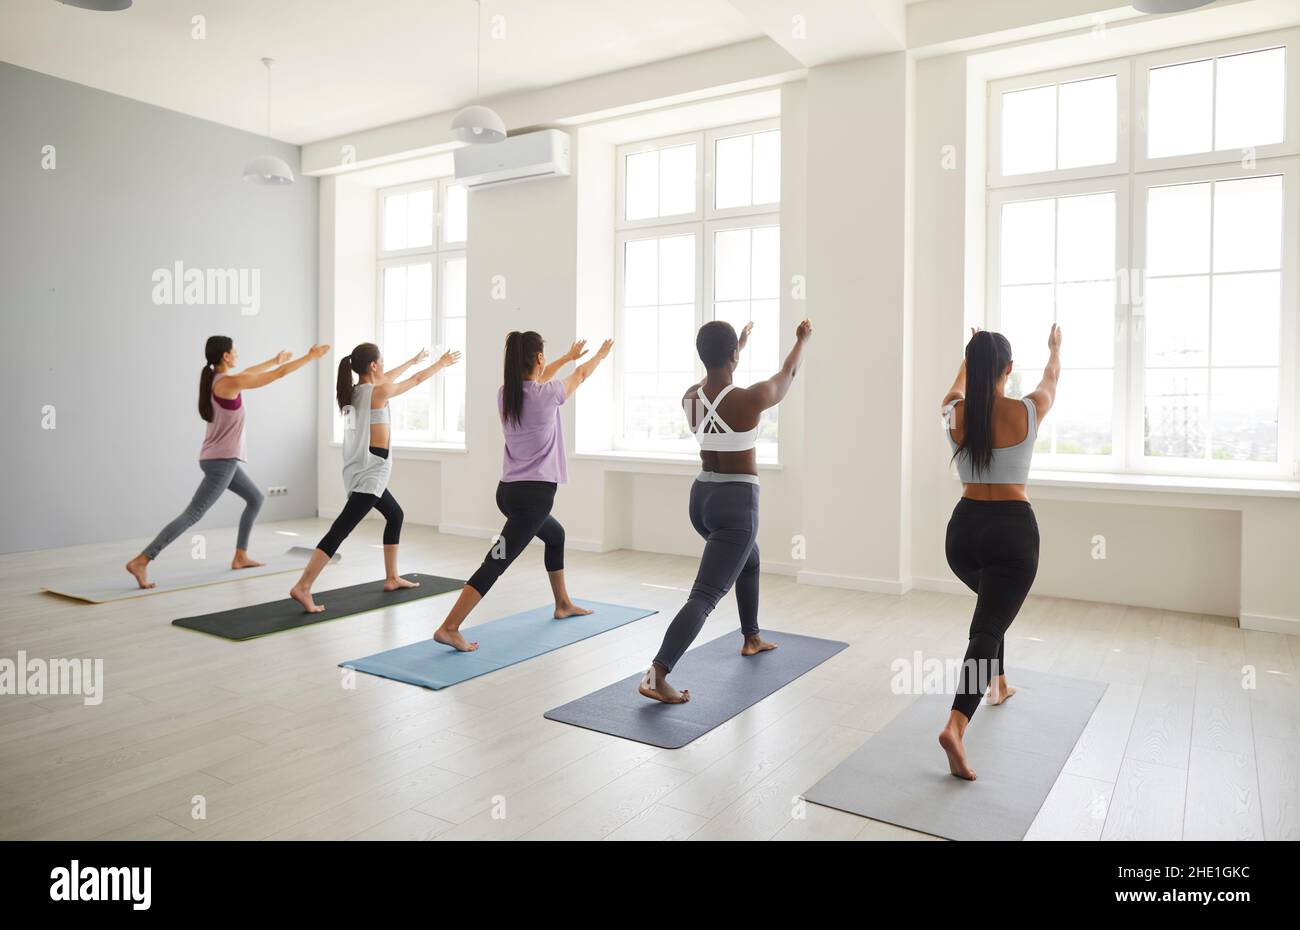 Verschiedene junge Frauen führen gemeinsam Pilates-Übungen in einem hellen, geräumigen Raum durch. Stockfoto